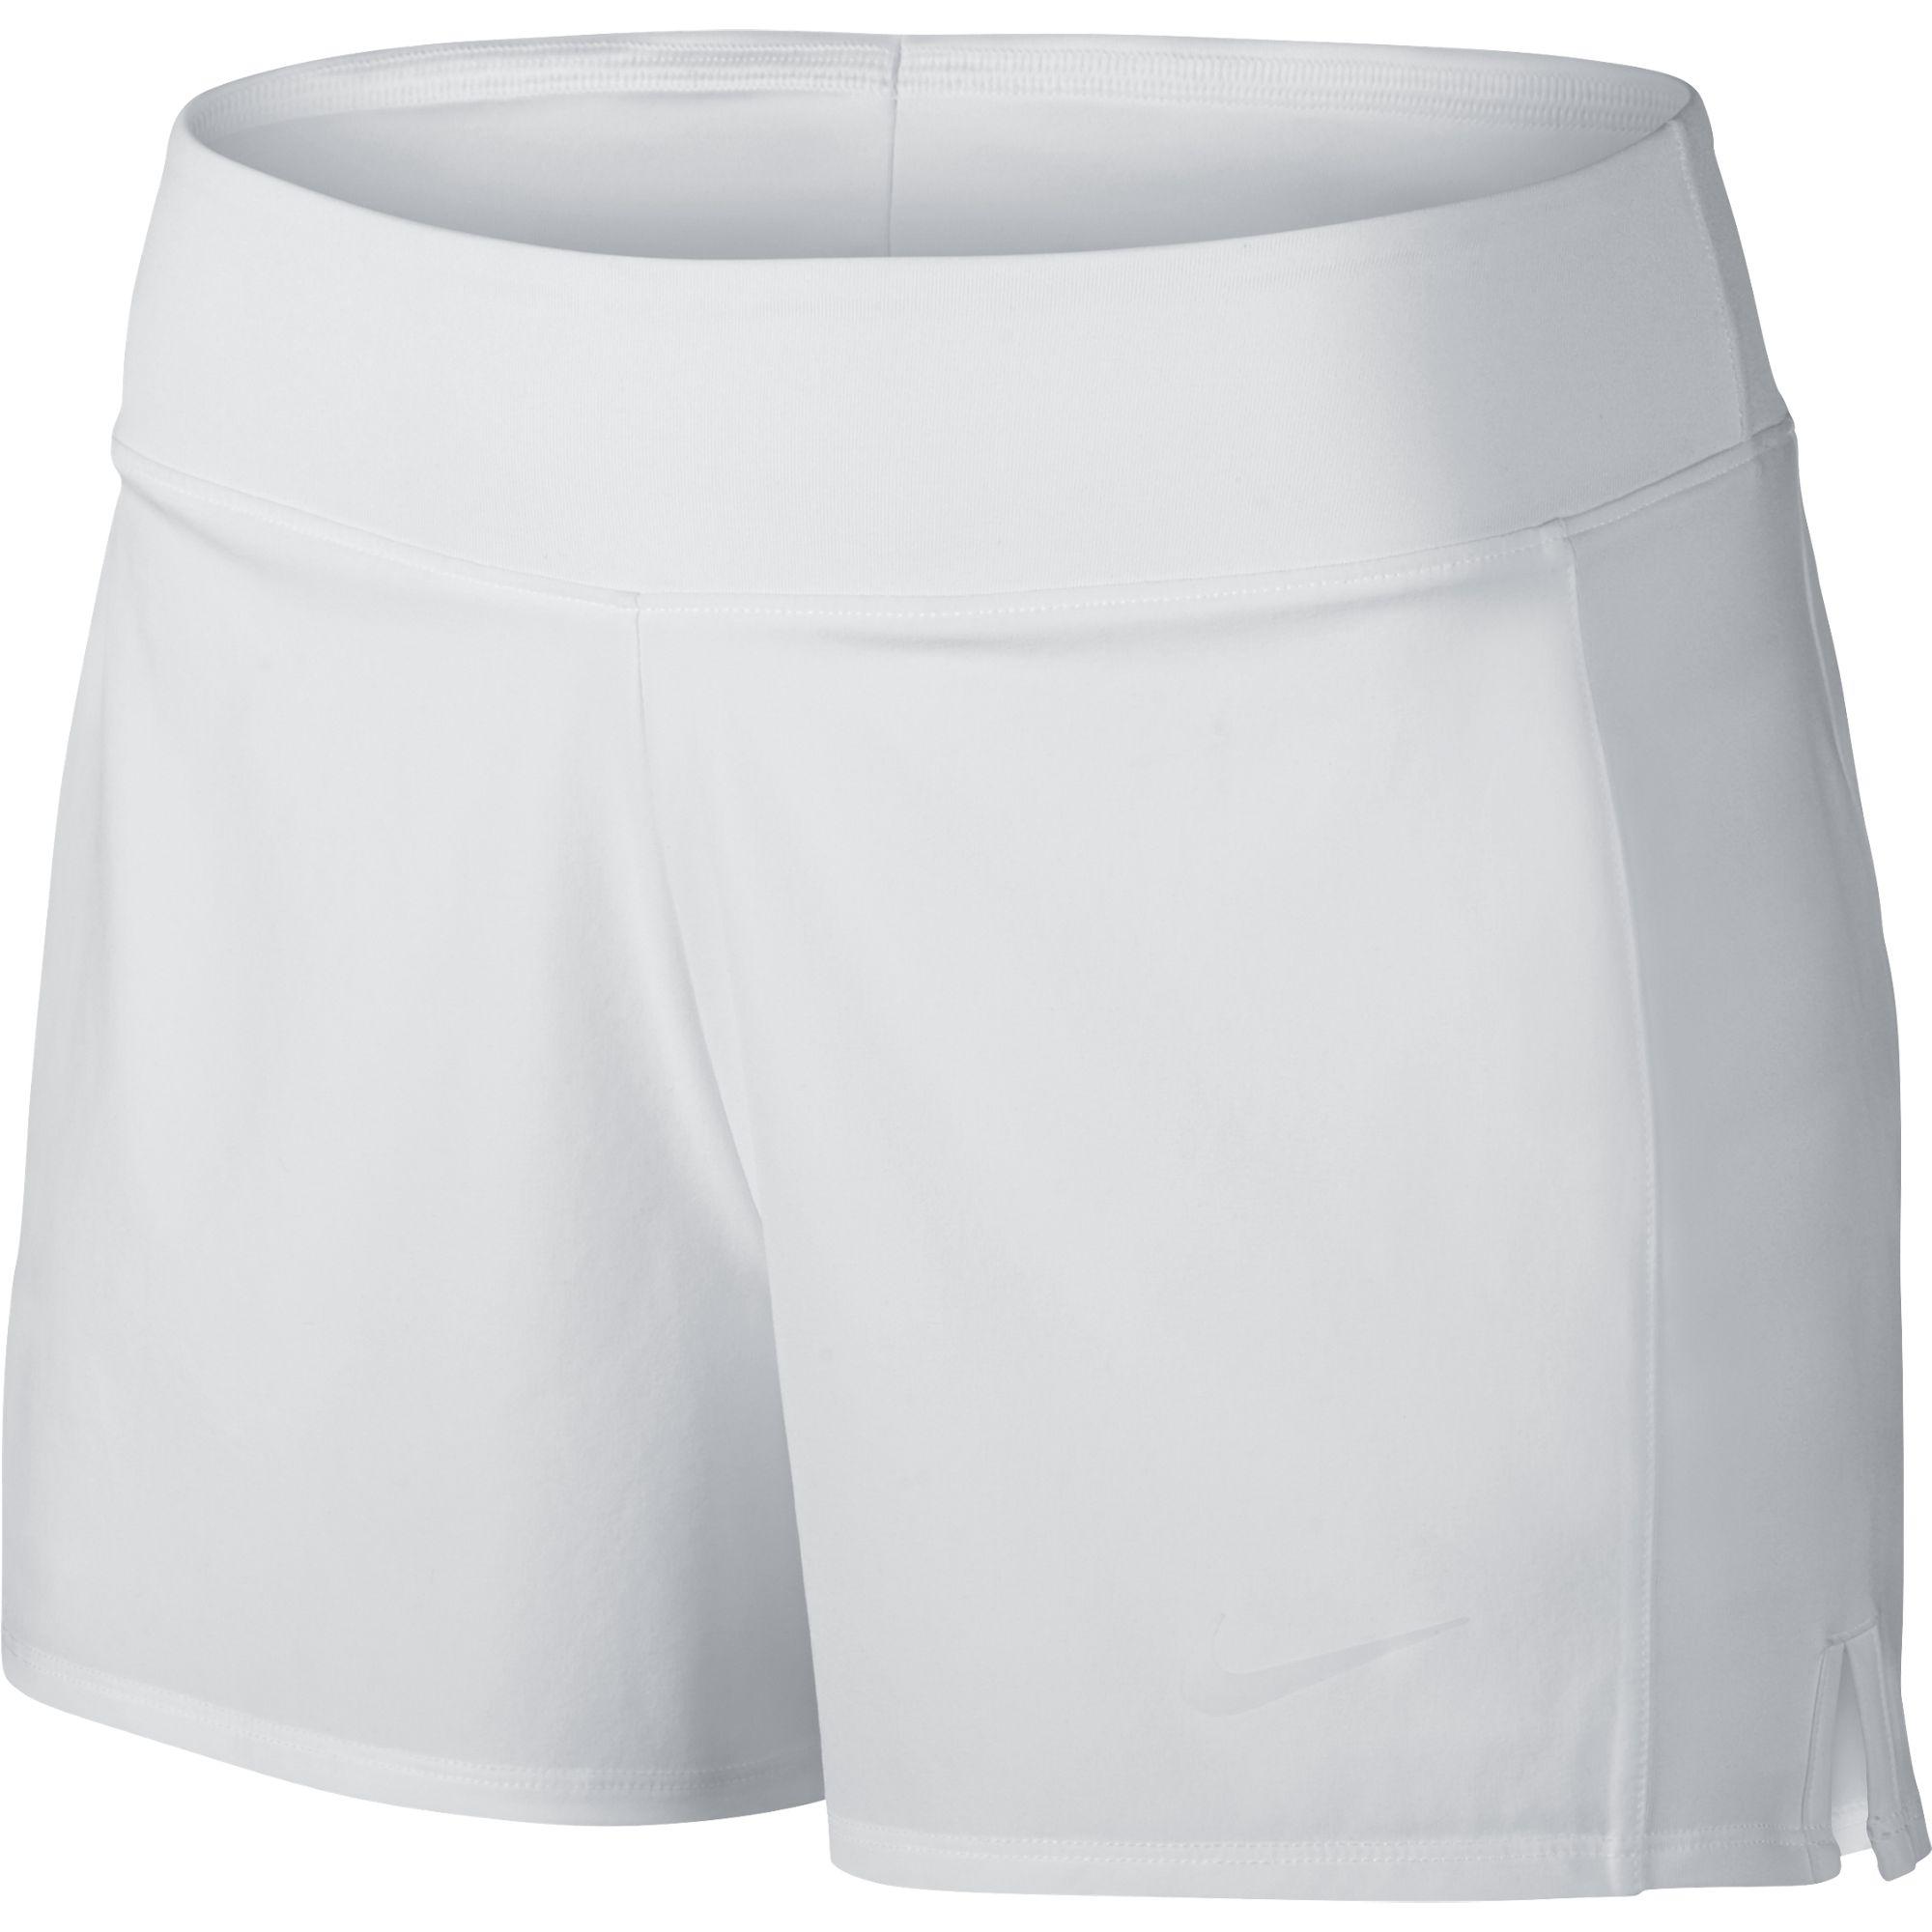 Nike Womens Baseline Tennis Shorts - White - Tennisnuts.com